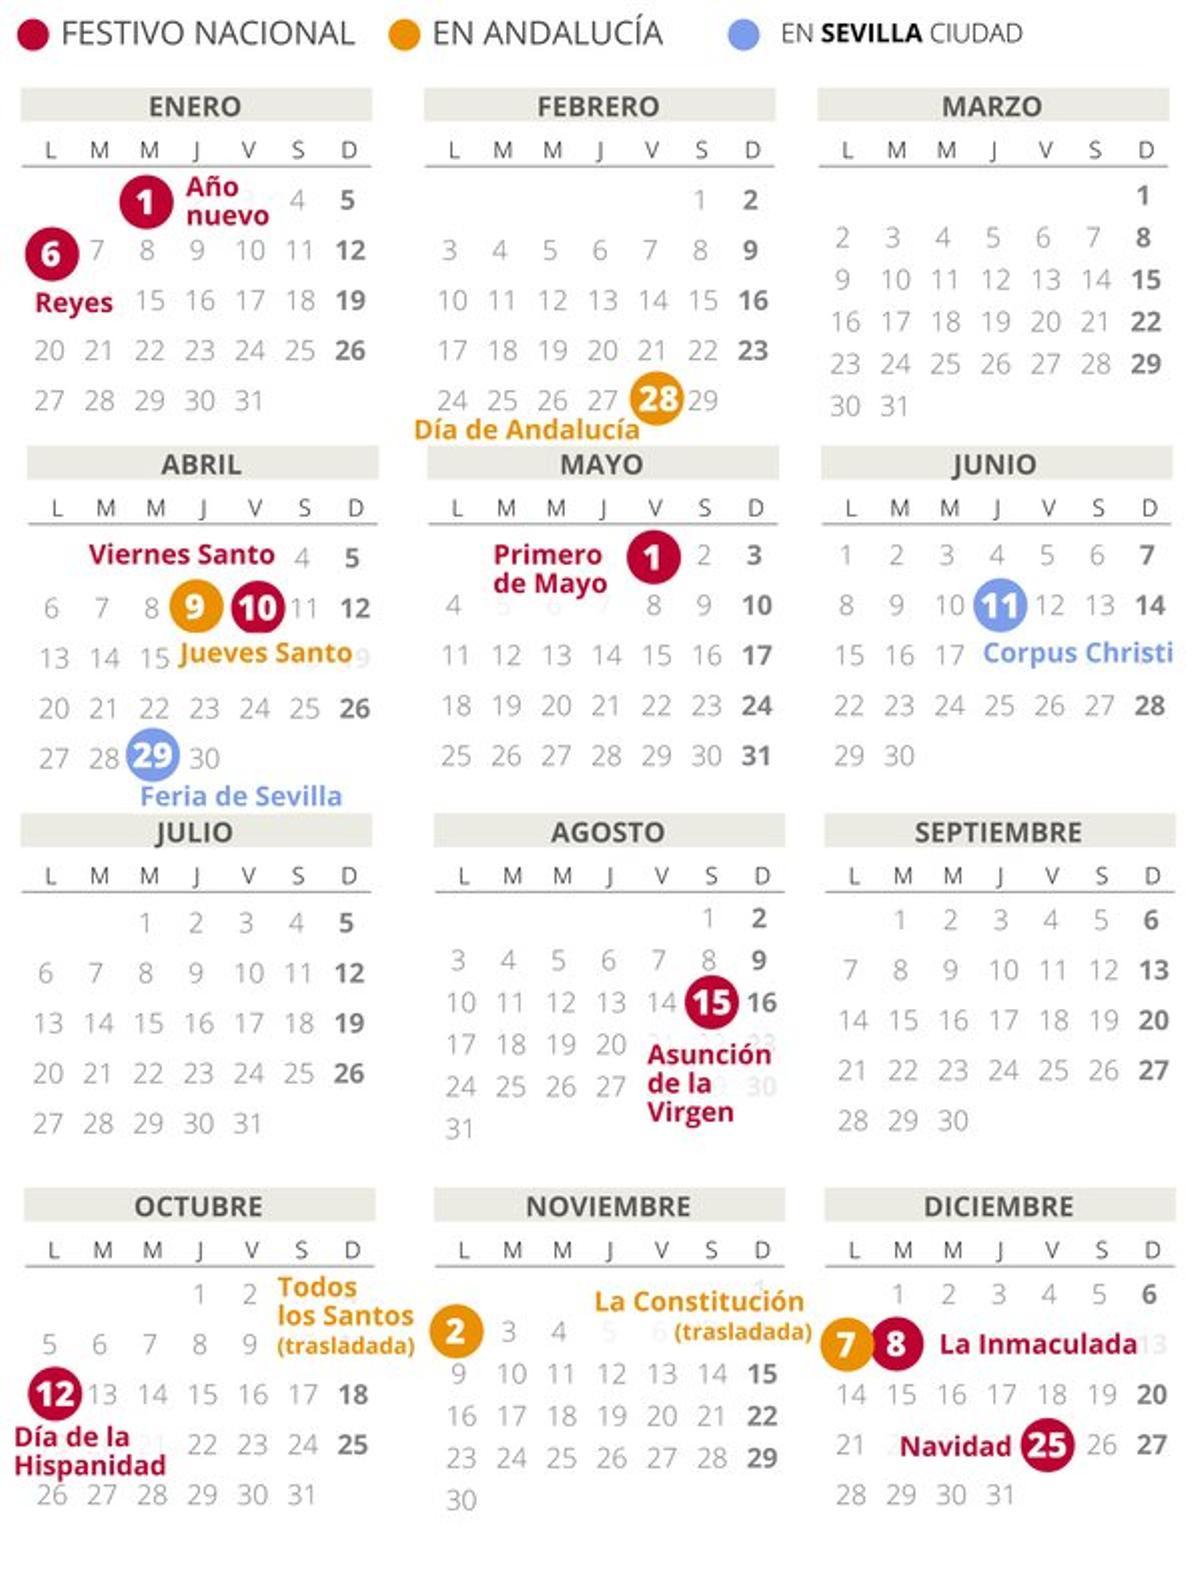 Calendario laboral de Sevilla del 2020.